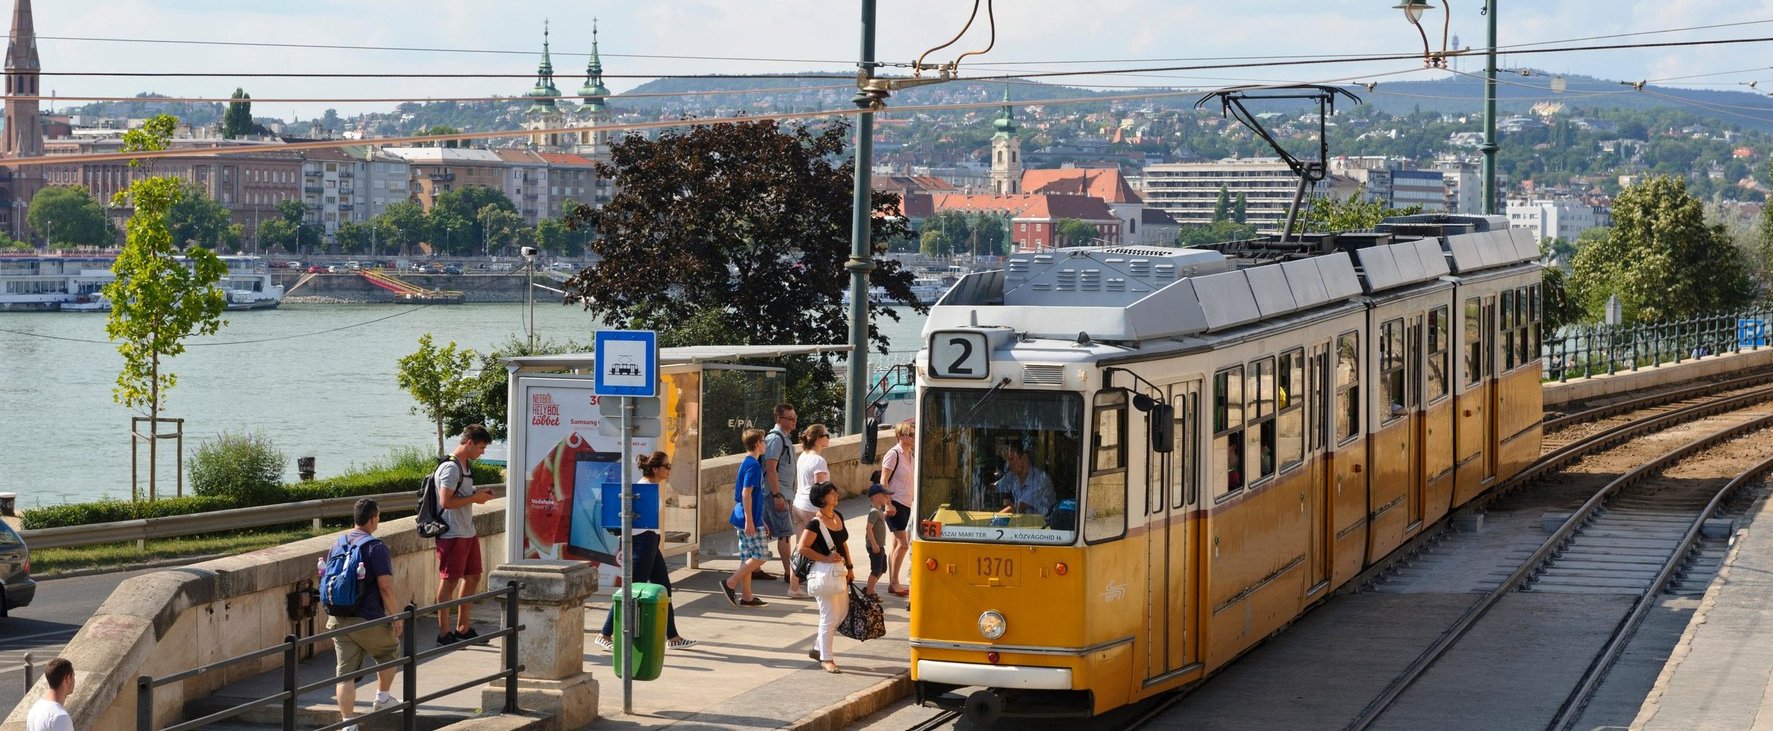 Gusztustalan módon lopják meg Budapestet a bliccelő utasok, undorító kihívás terjed a közösségi oldalakon